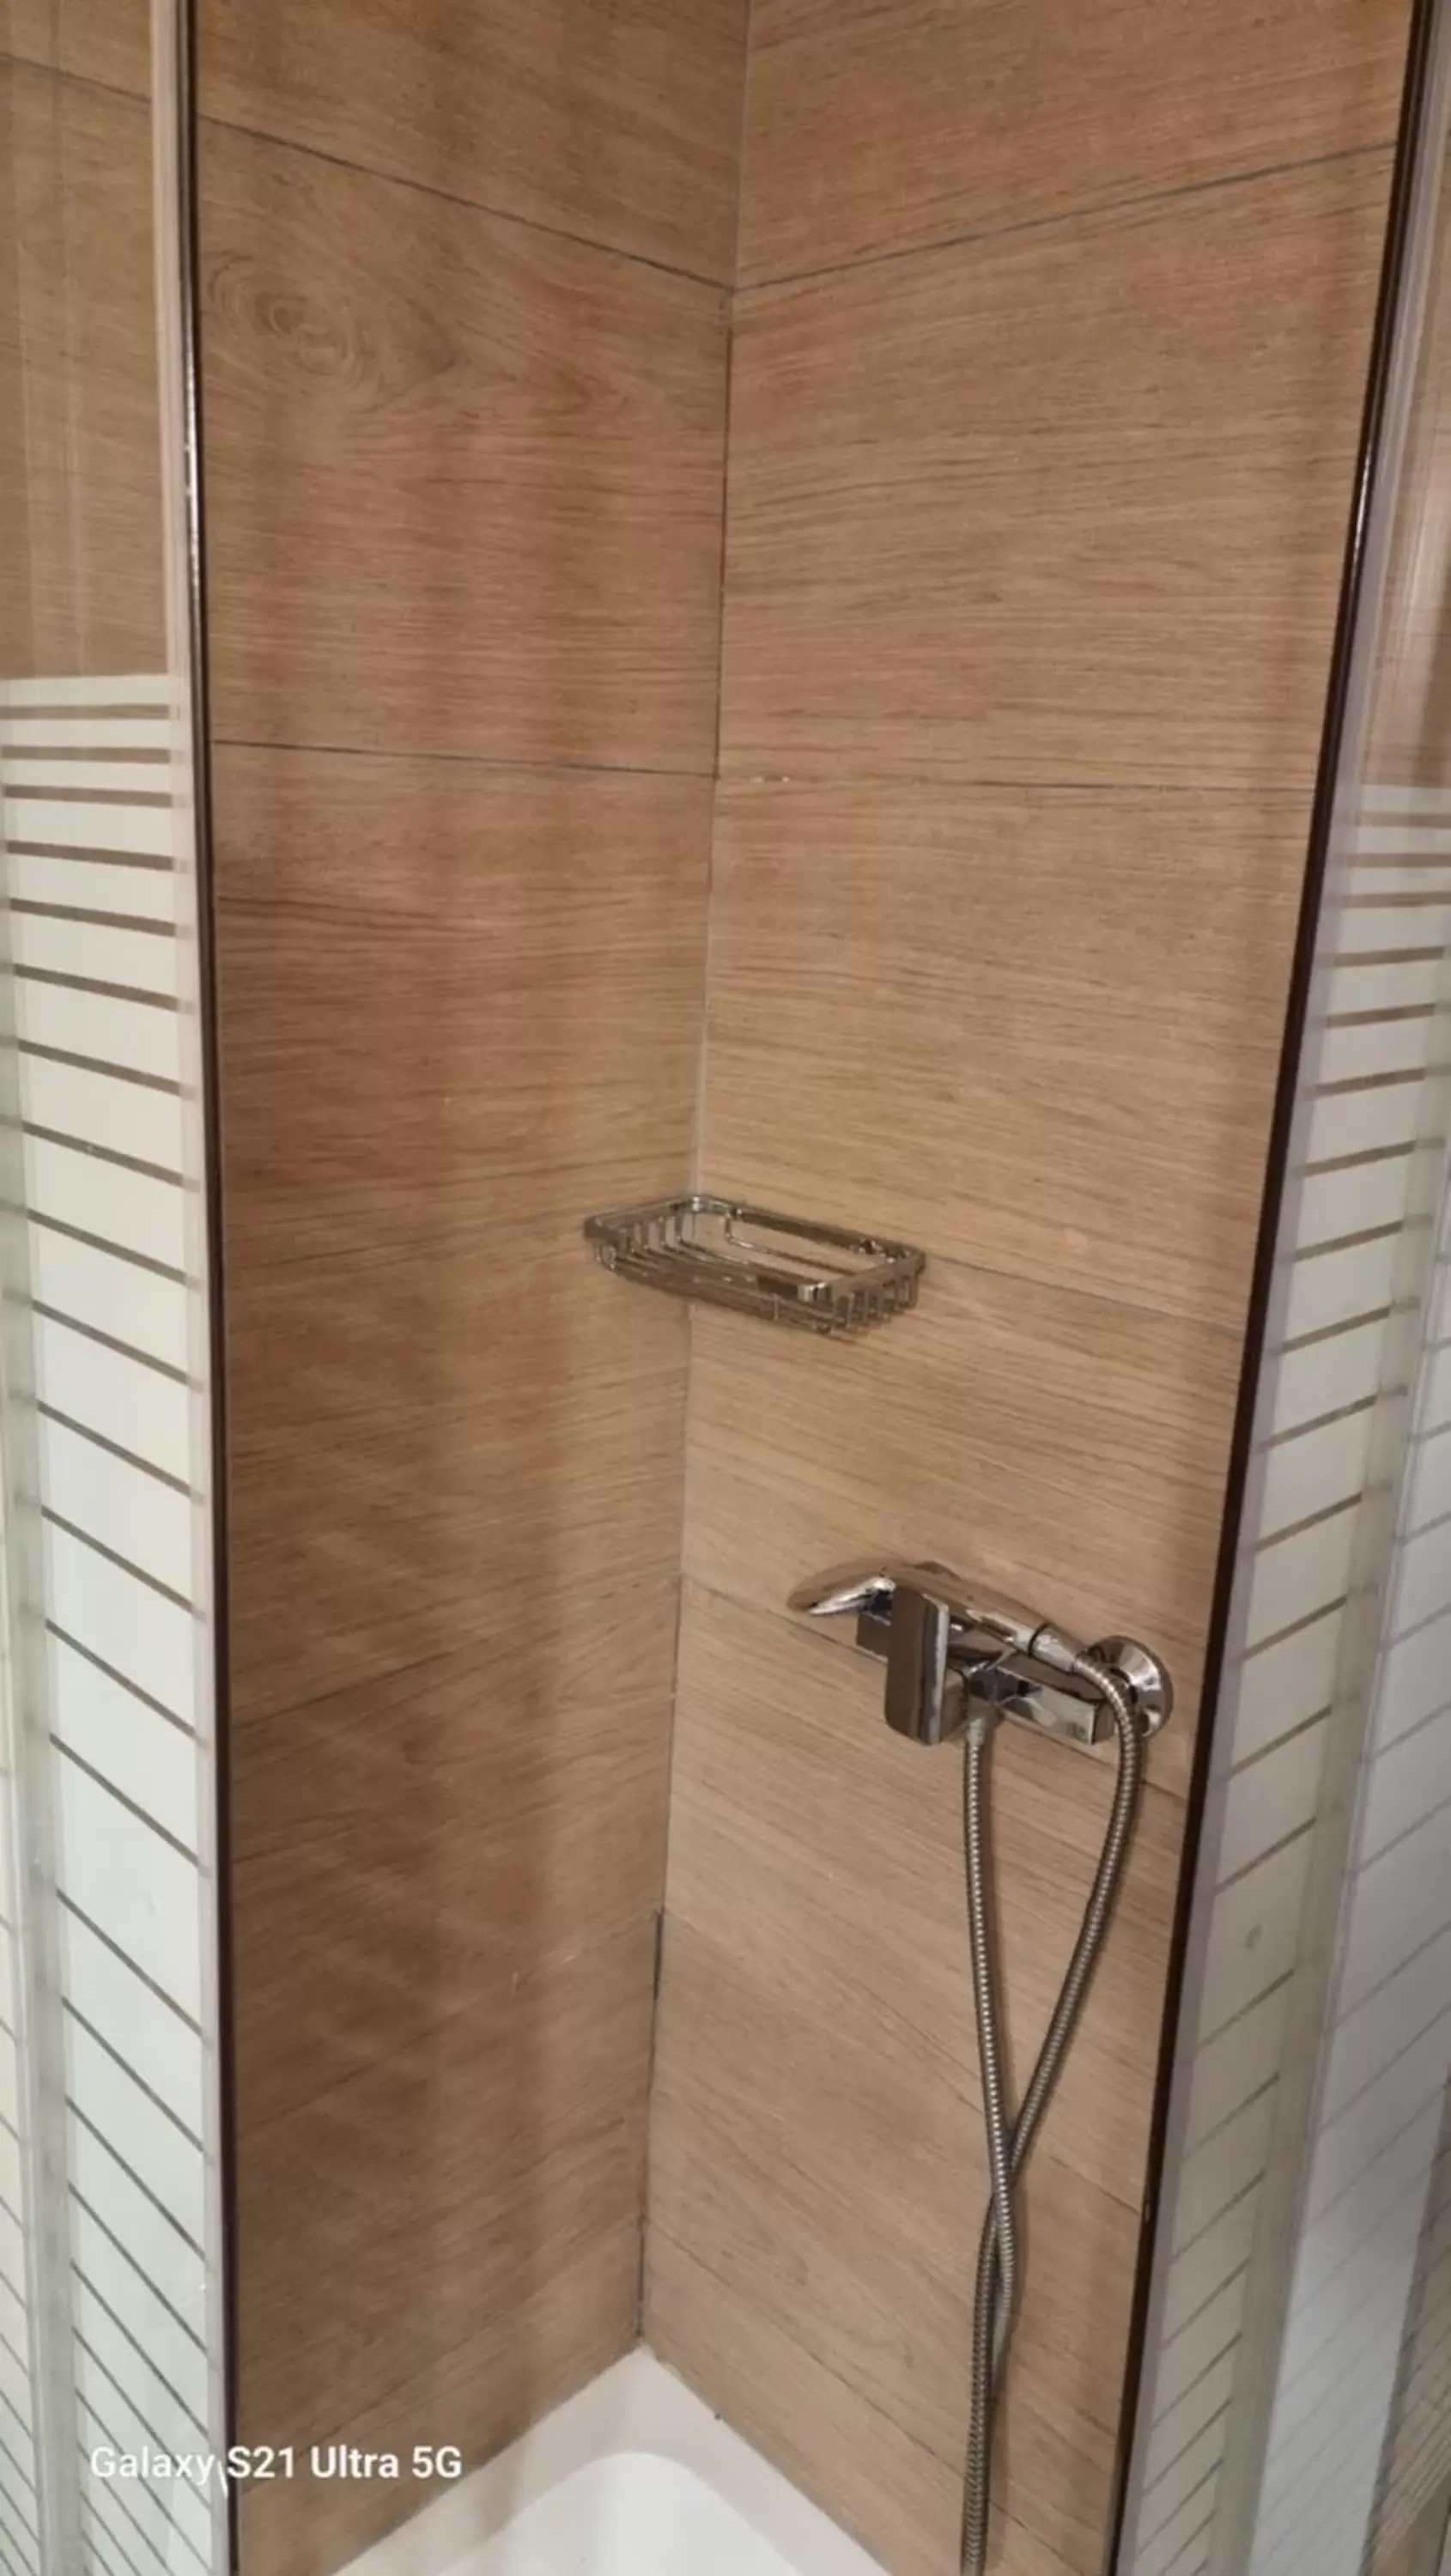 Shower, Bathroom in athensvintage